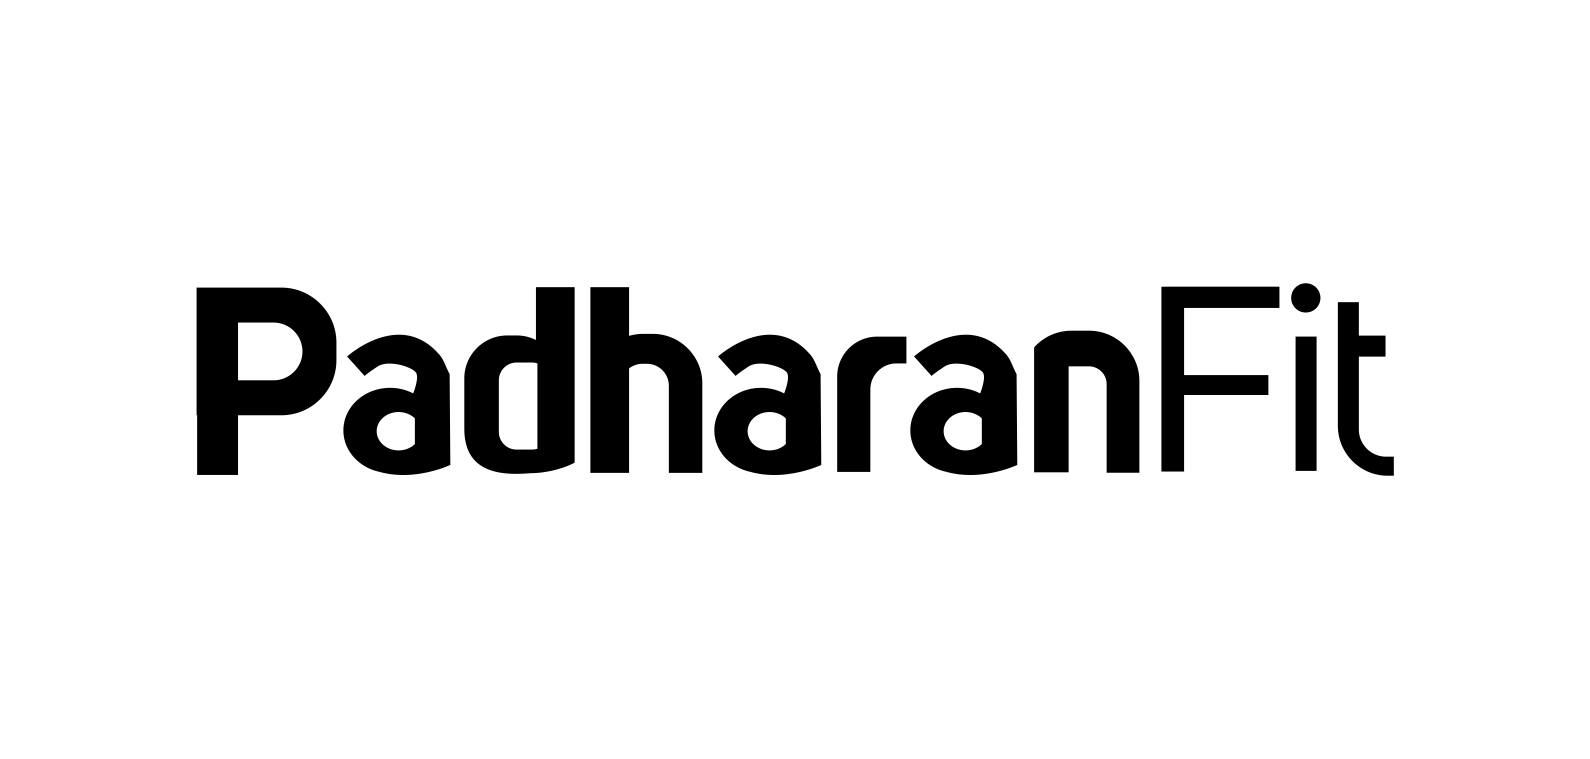 Padharanfit